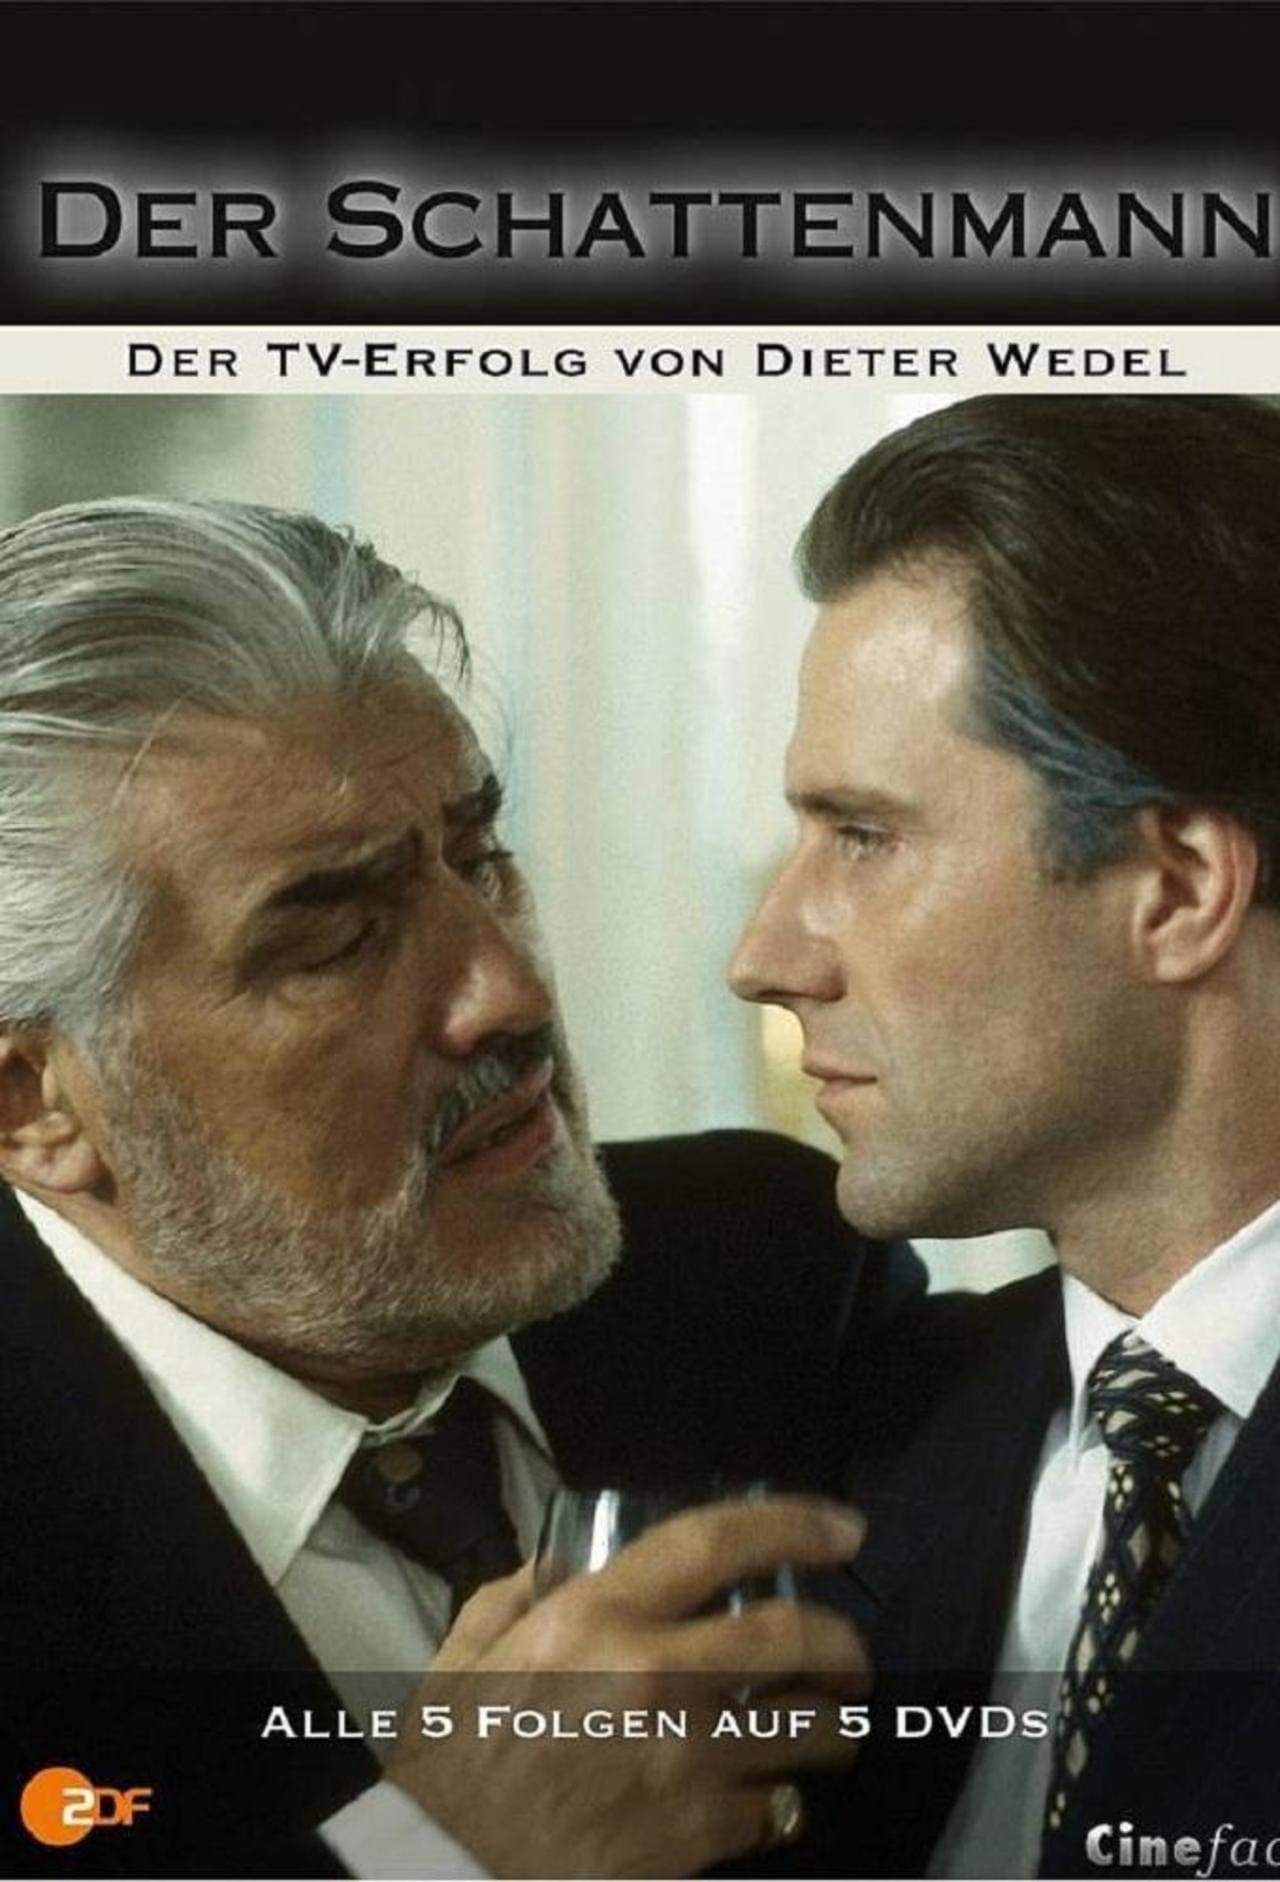 Der Schattenmann (1996)